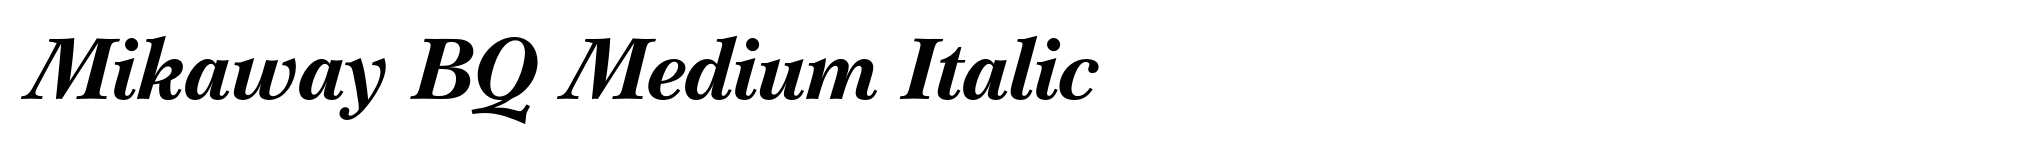 Mikaway BQ Medium Italic image